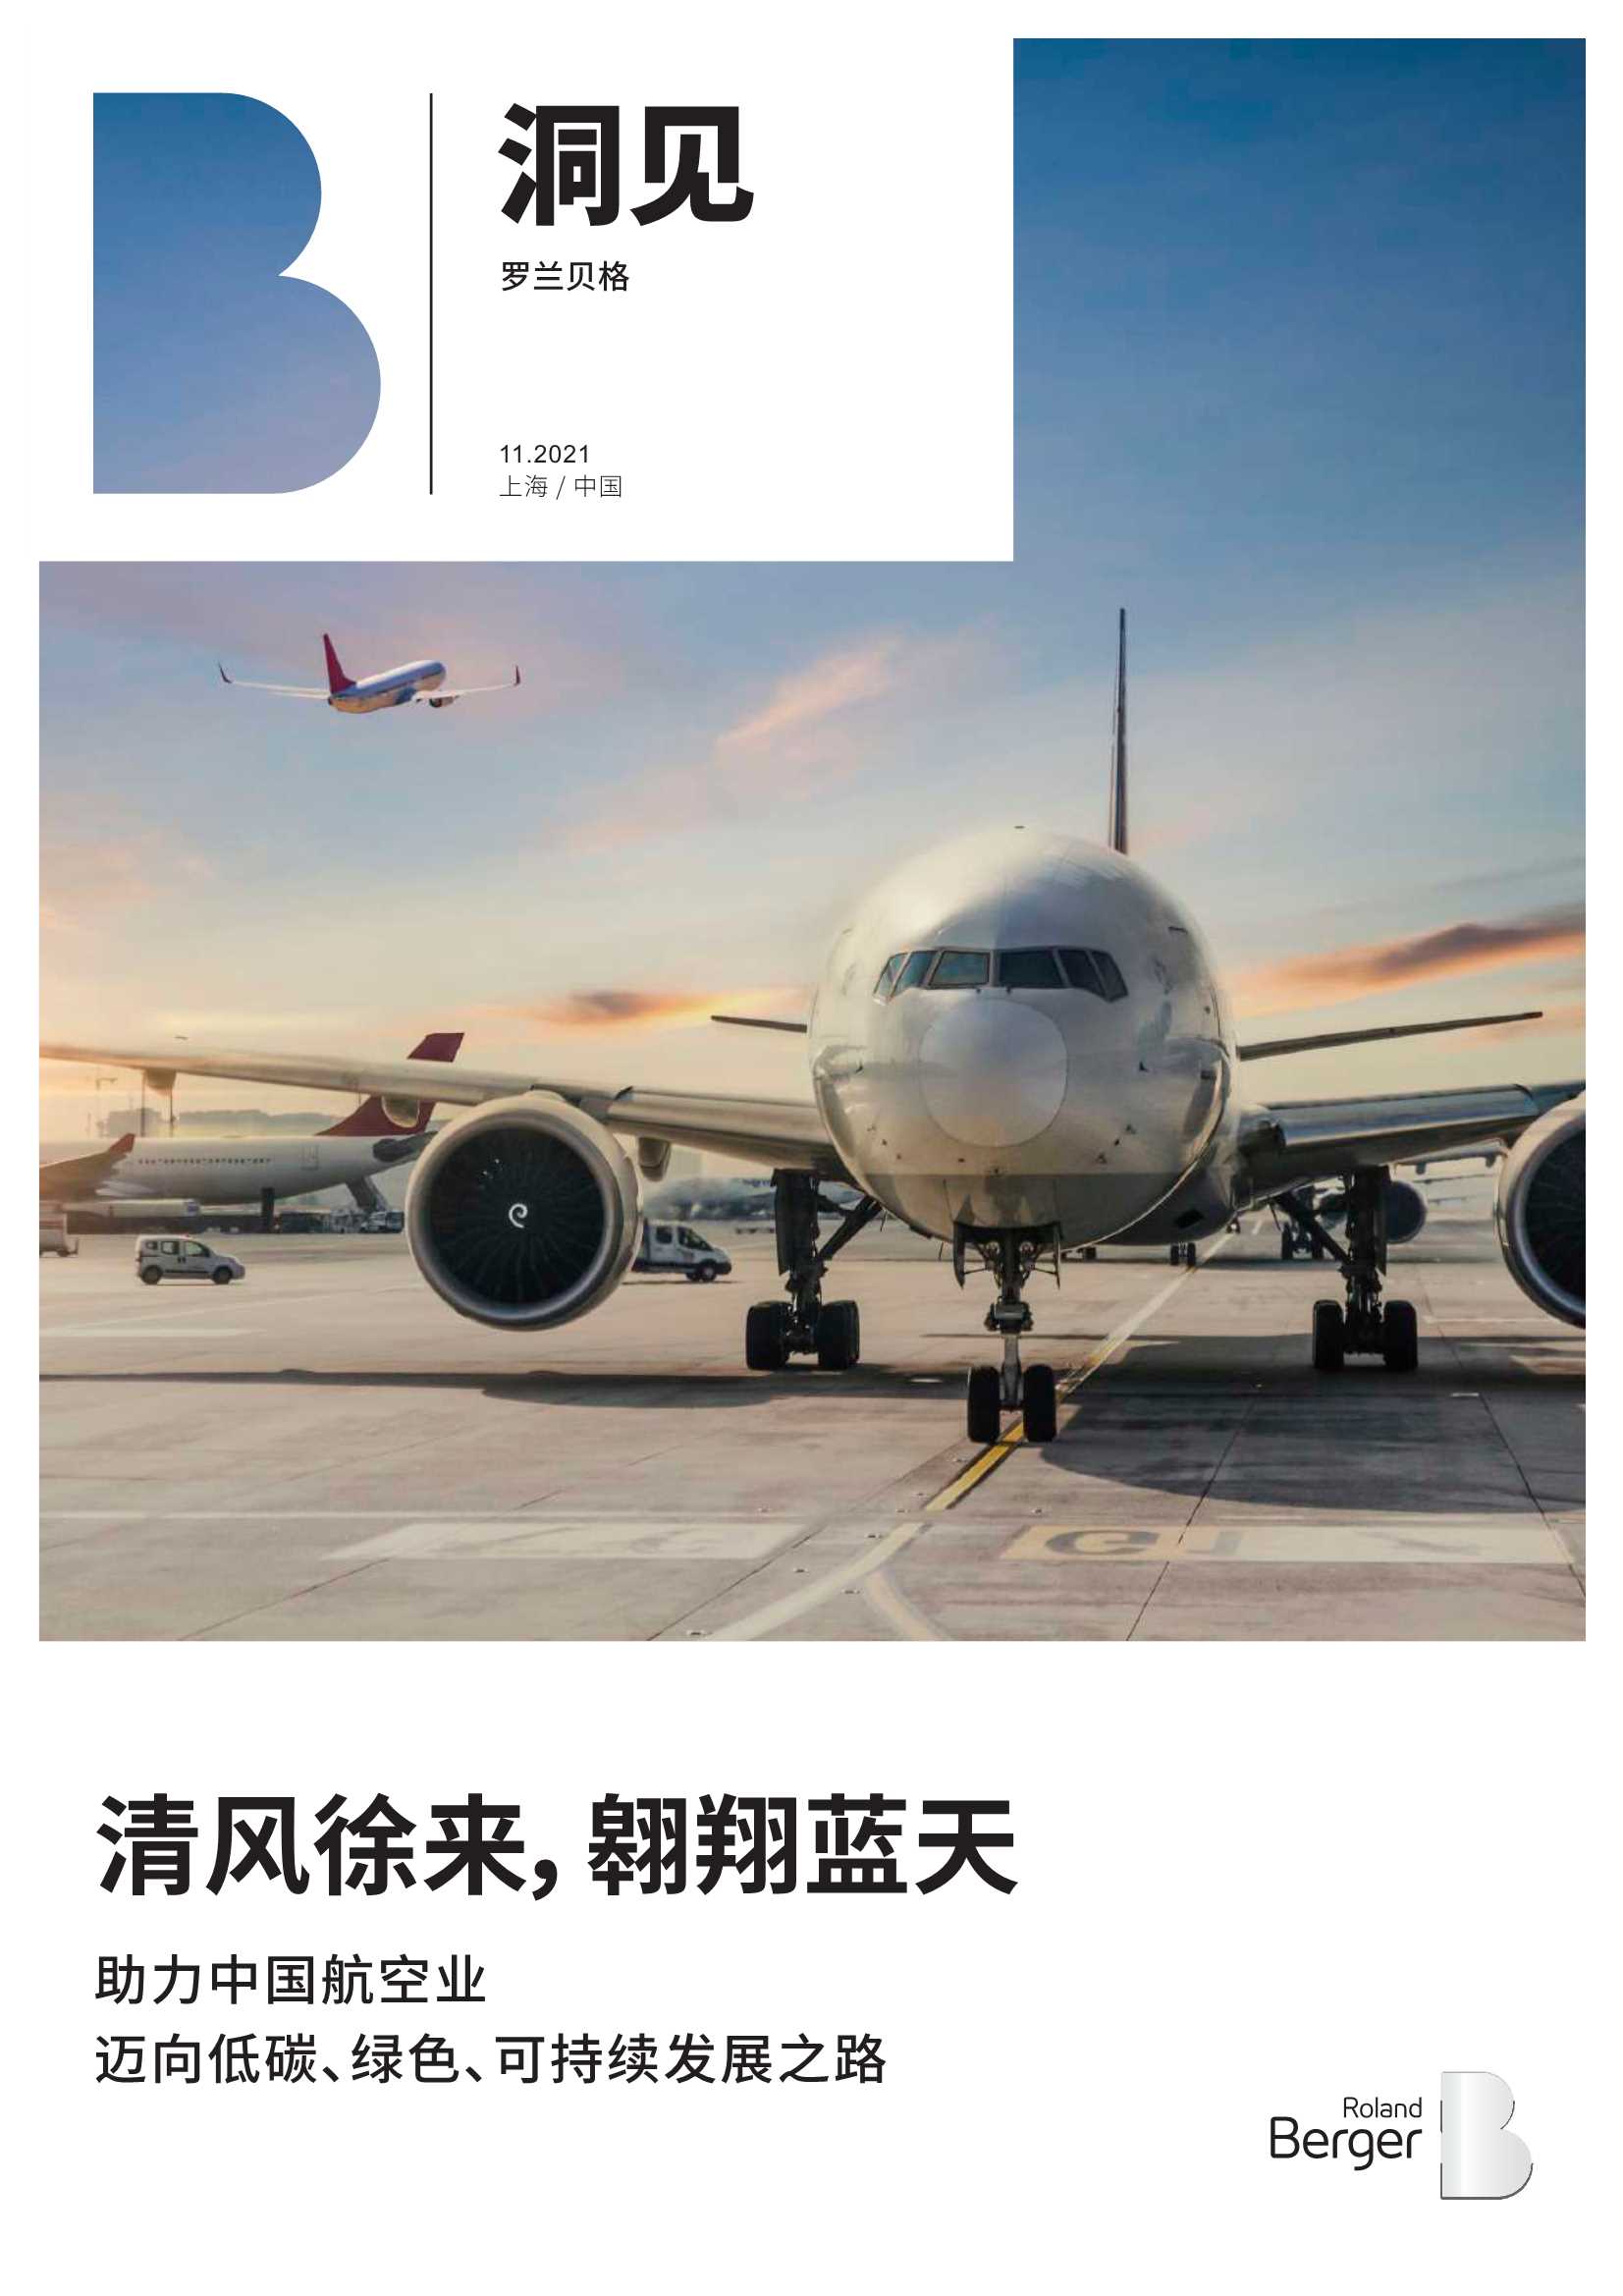 罗兰贝格-助力中国航空业迈向低碳、绿色、可持续发展之路-2022.02-15页